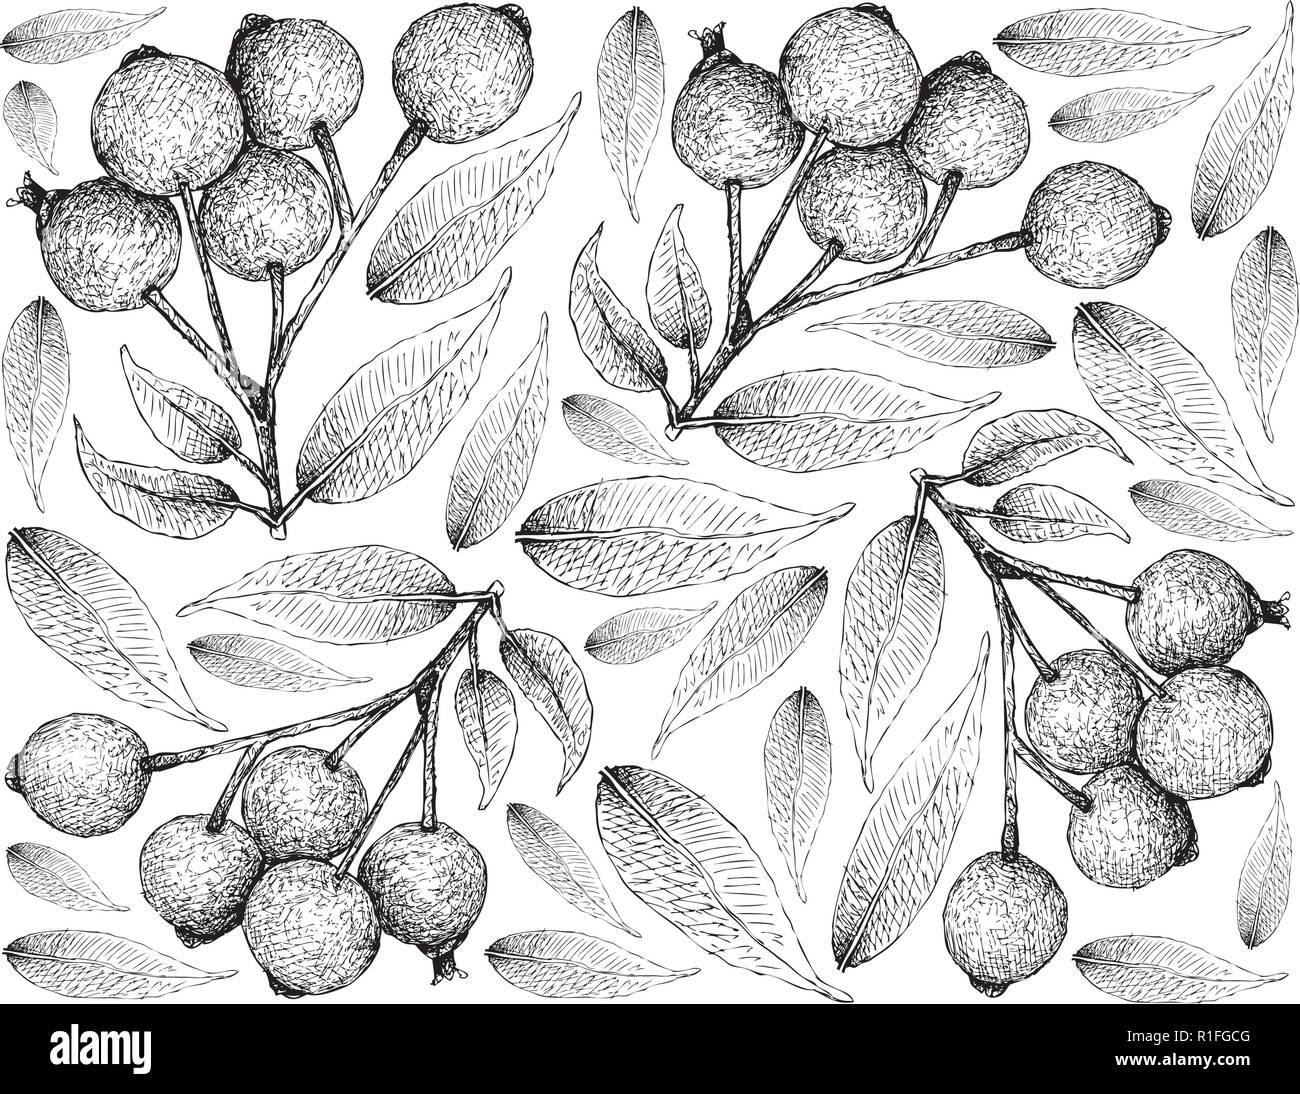 Beerenfrucht, Illustration Wallpaper von Hand gezeichnete Skizze von Magenta Lilly Pilly, Magenta Kirsche oder Syzygium Paniculatum Früchte isoliert auf Weiß Zurück Stock Vektor